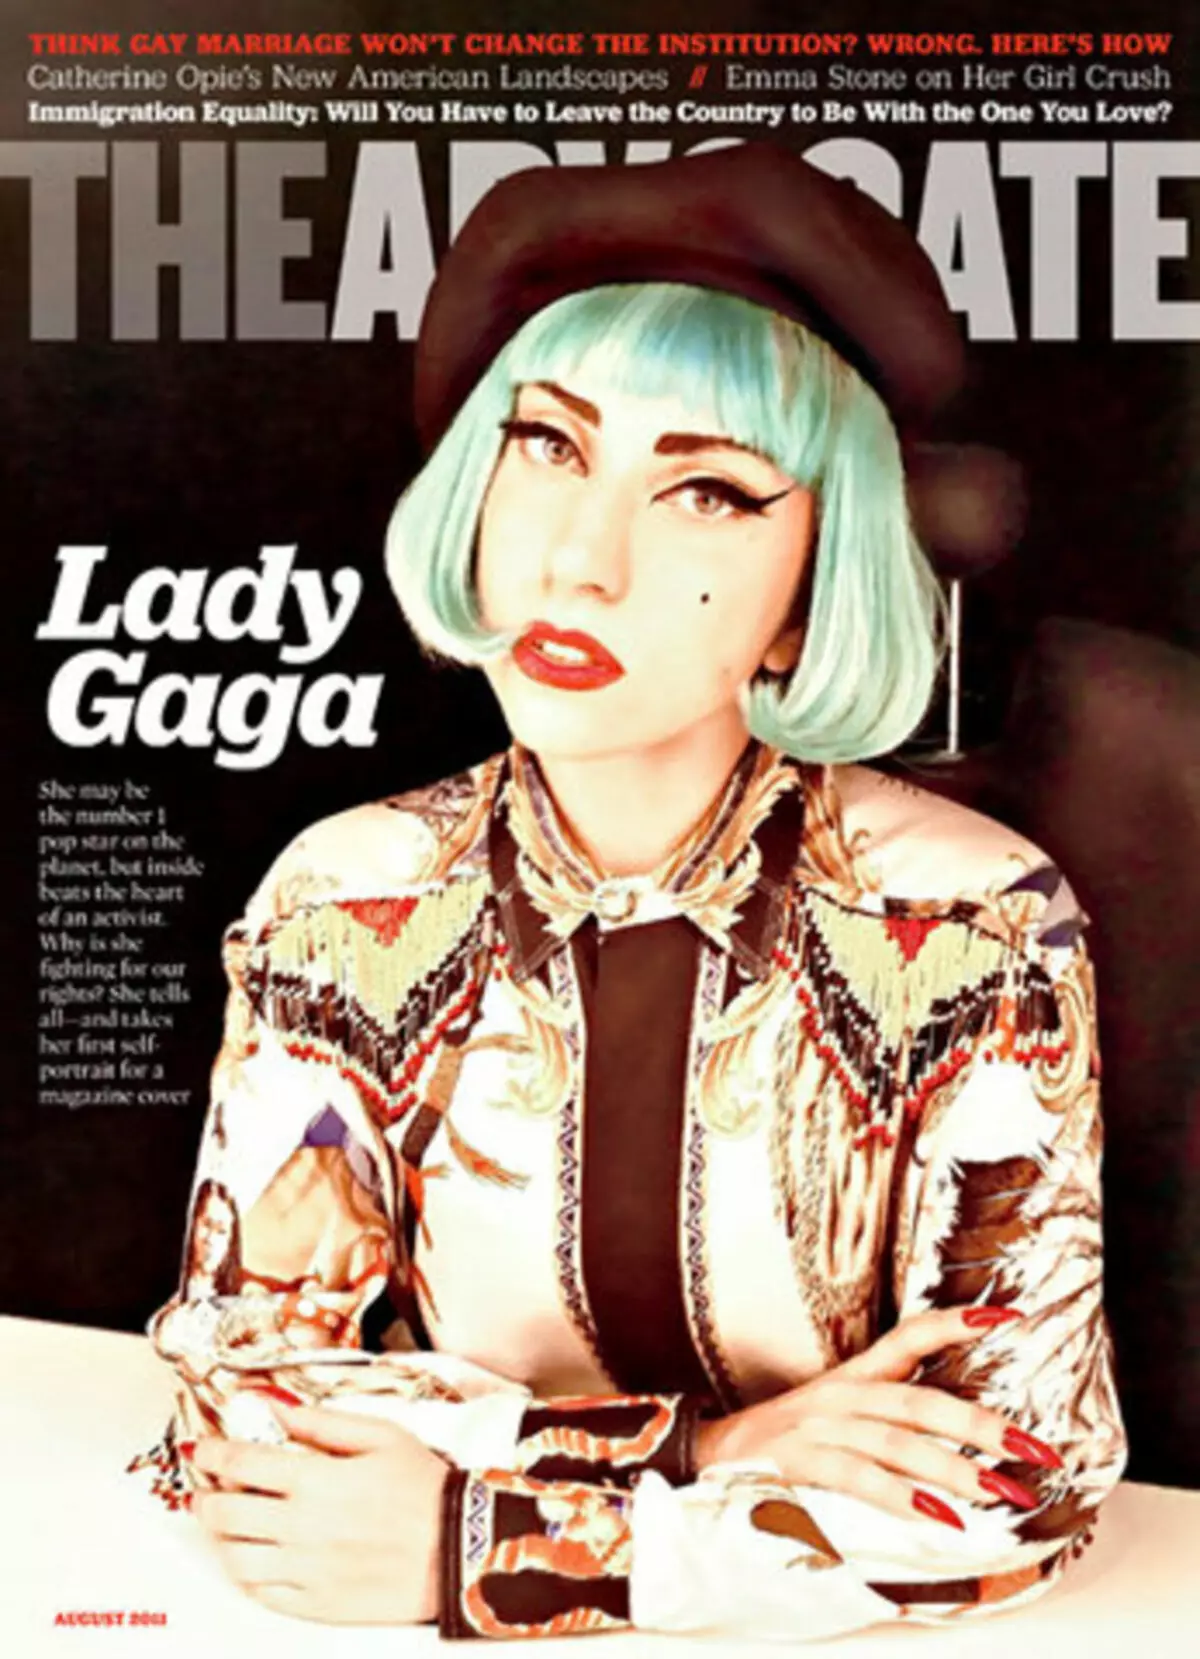 Леди Гага гей коомчулугун башкарат деген билдирүү менен таарынган